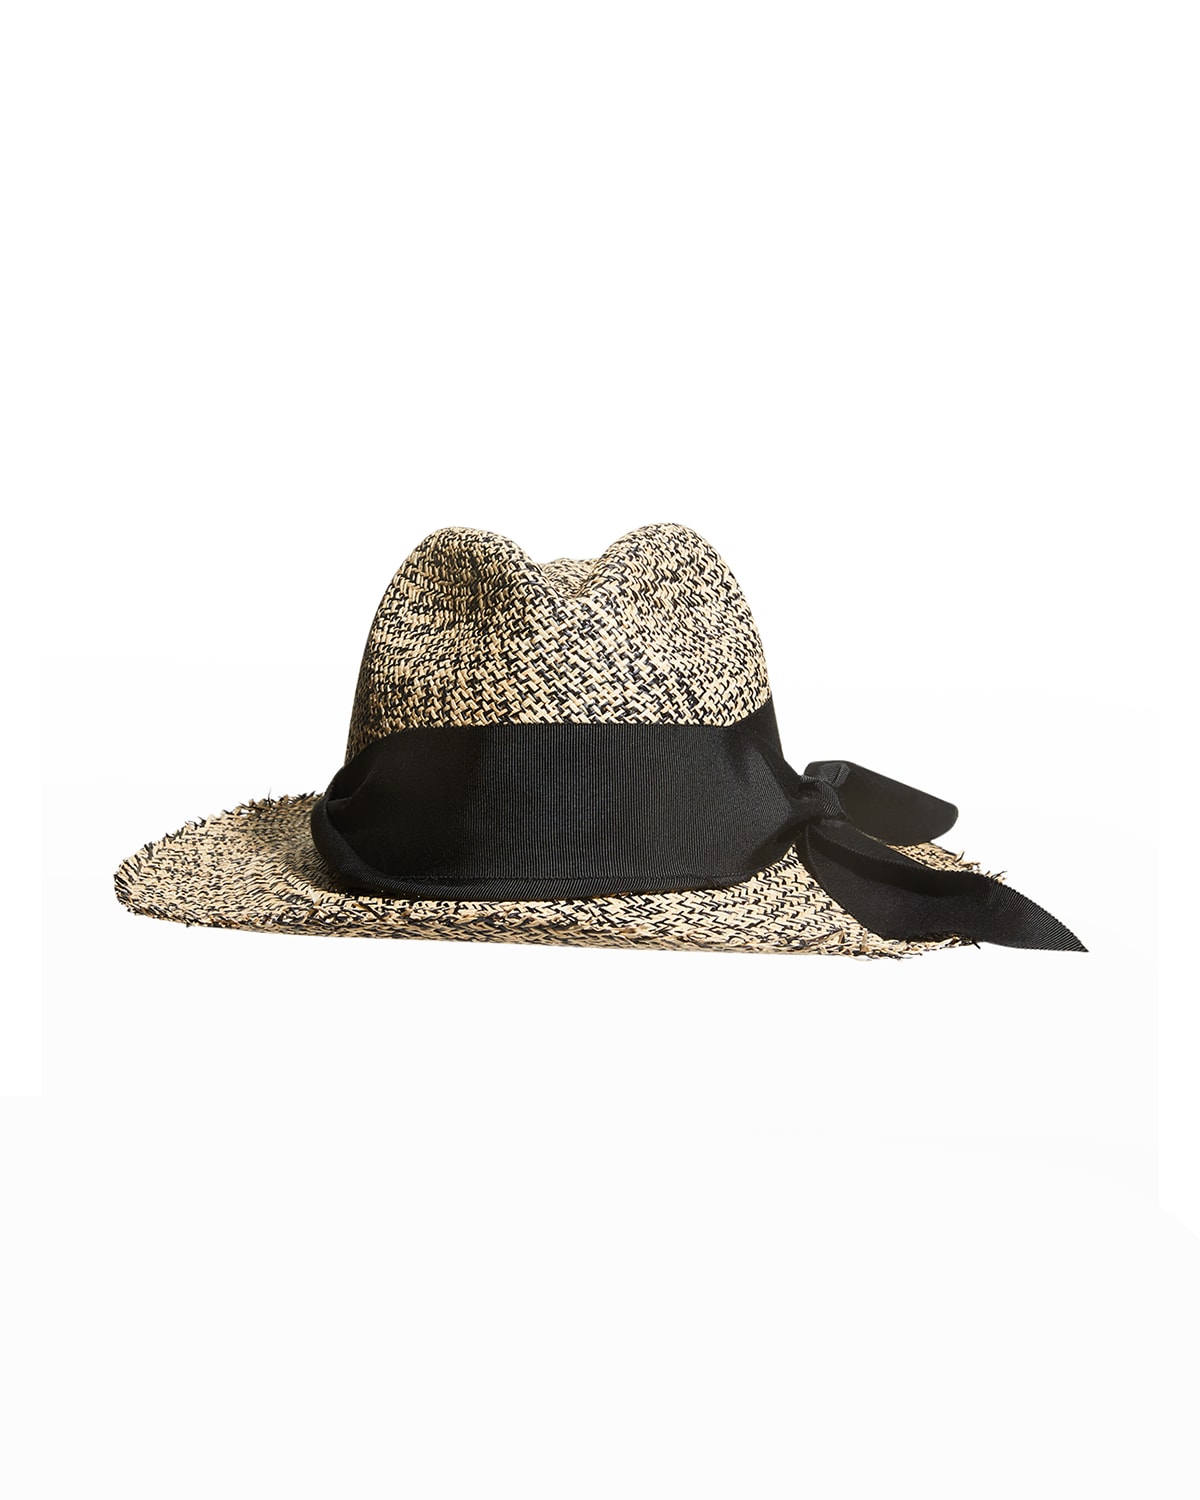 Sensi Studio Bicolor Ribbon Straw Panama Hat In Natural / Black